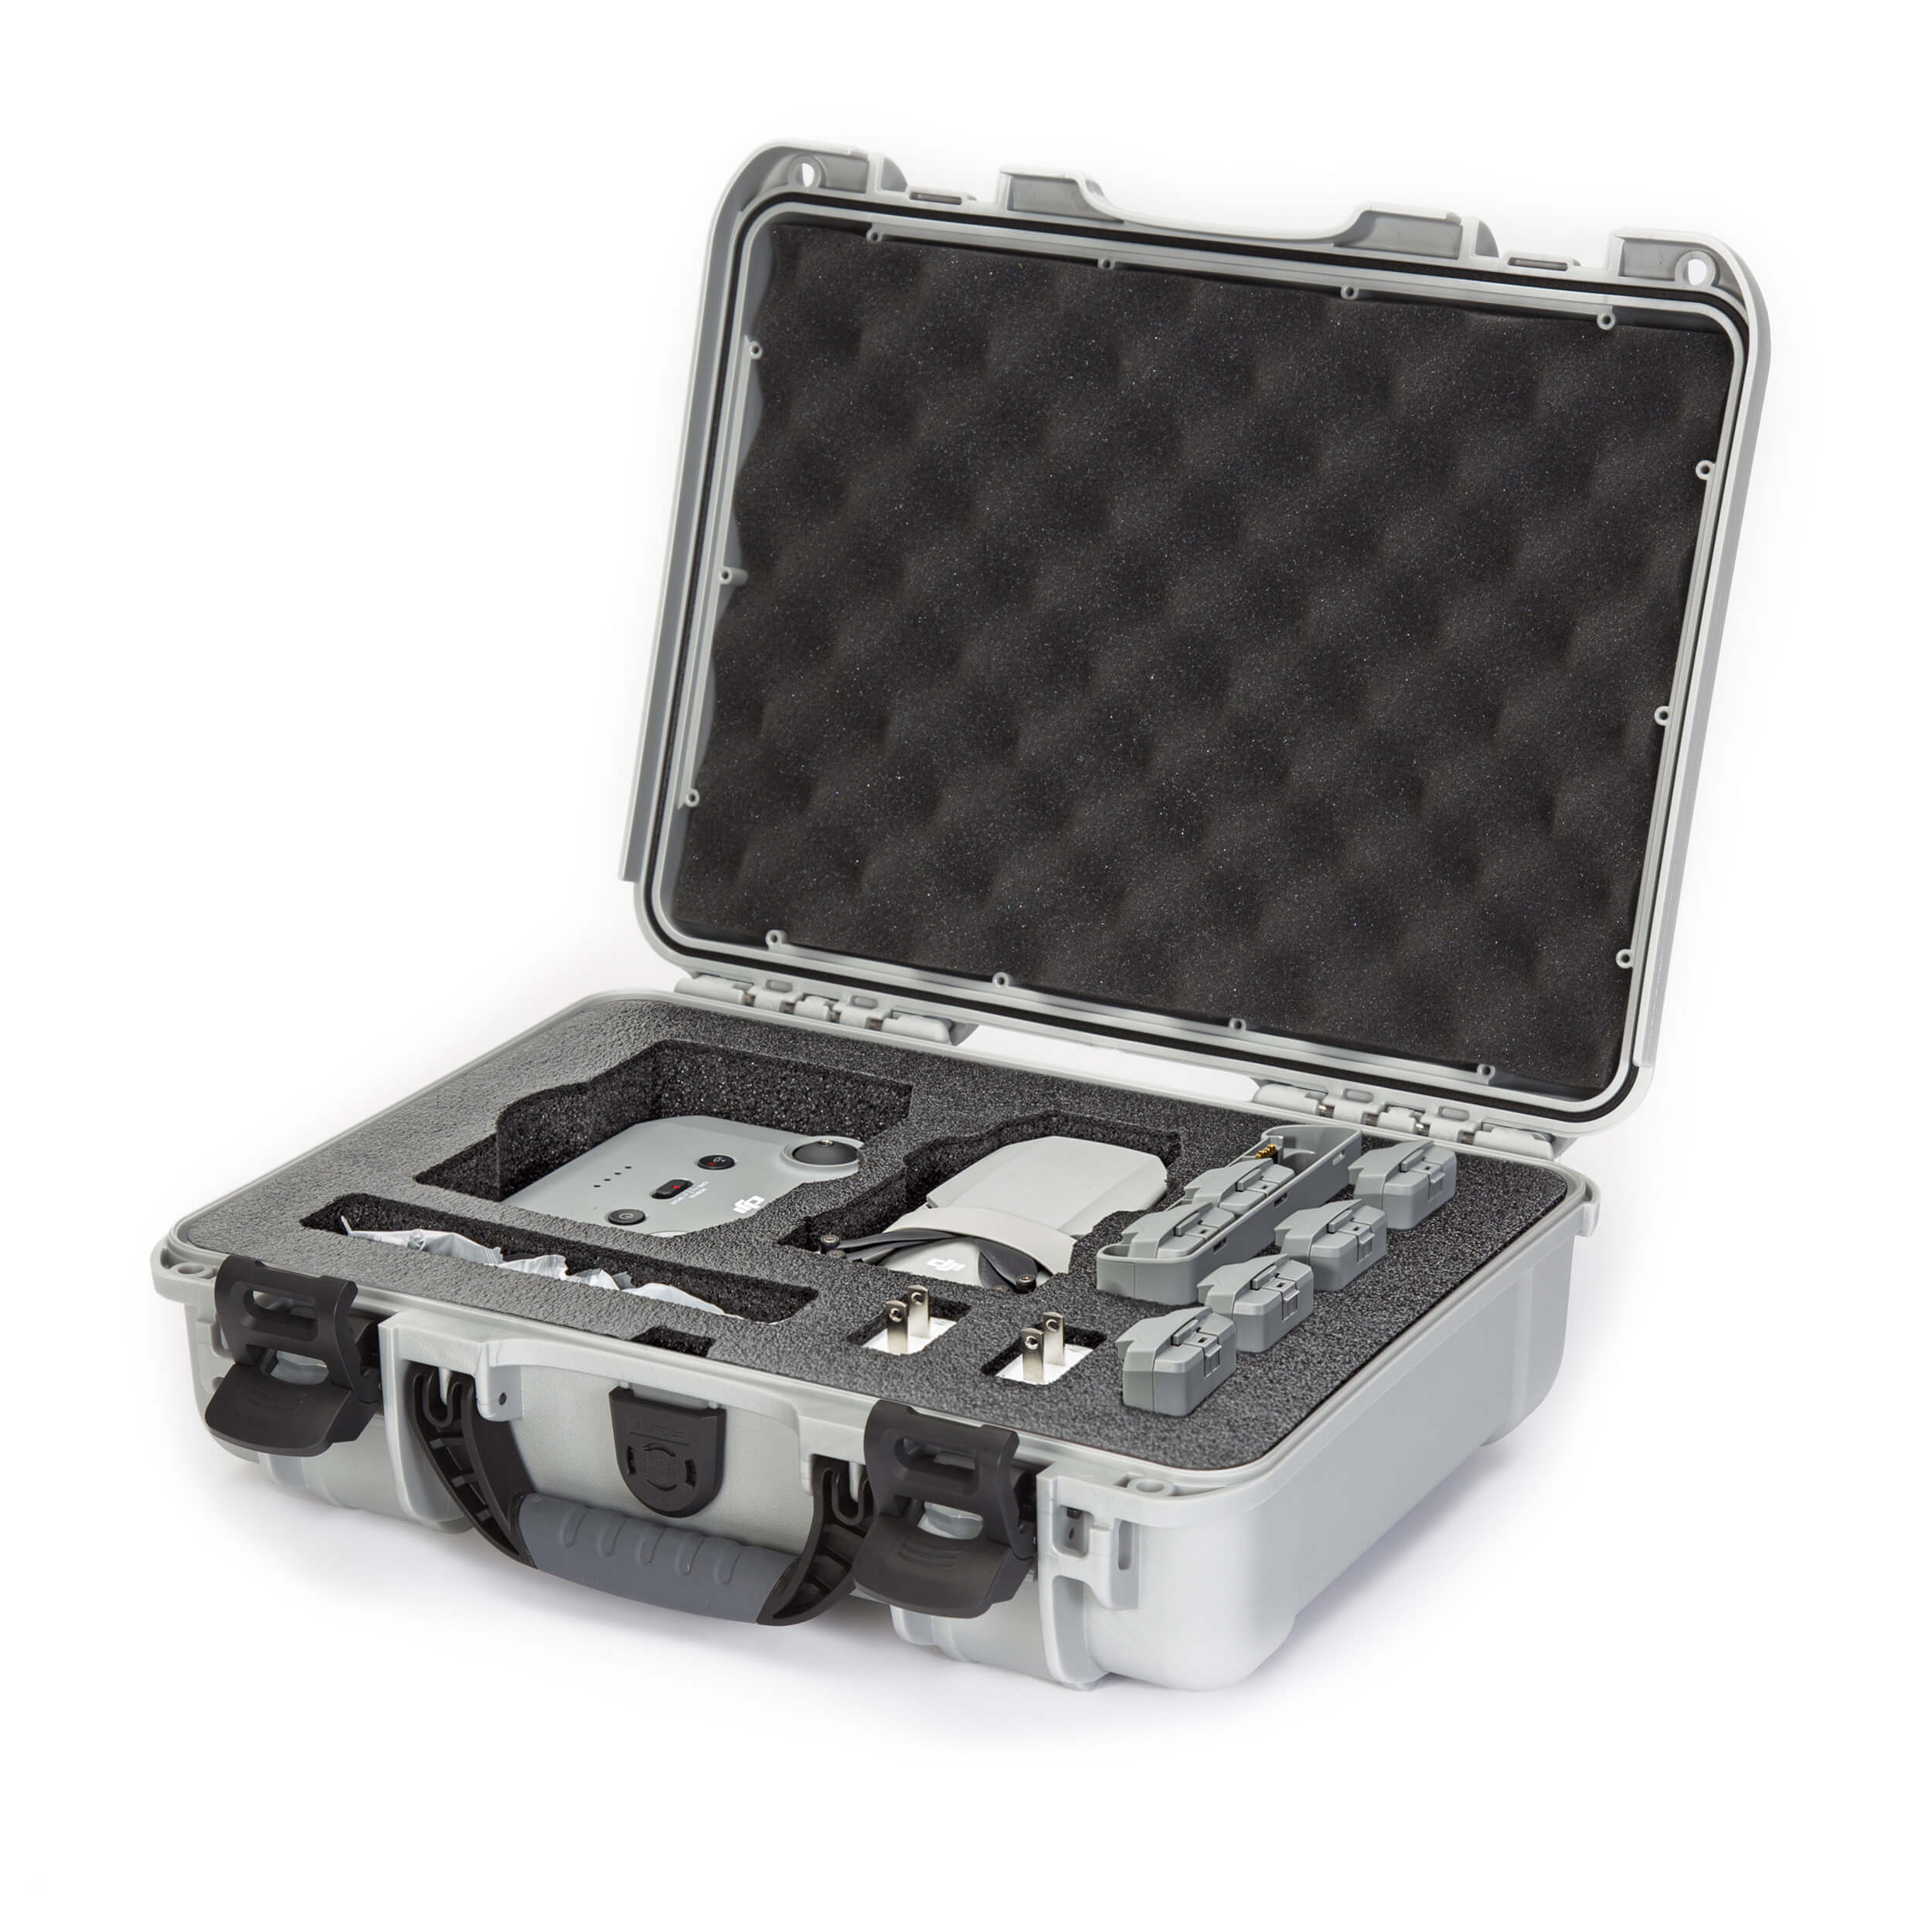 DJI Mavic Mini 2 SE Carrying Case, Portable Travel Bag for DJI Mini 2/Mini  2 SE Fly More Combo Drone Accessories